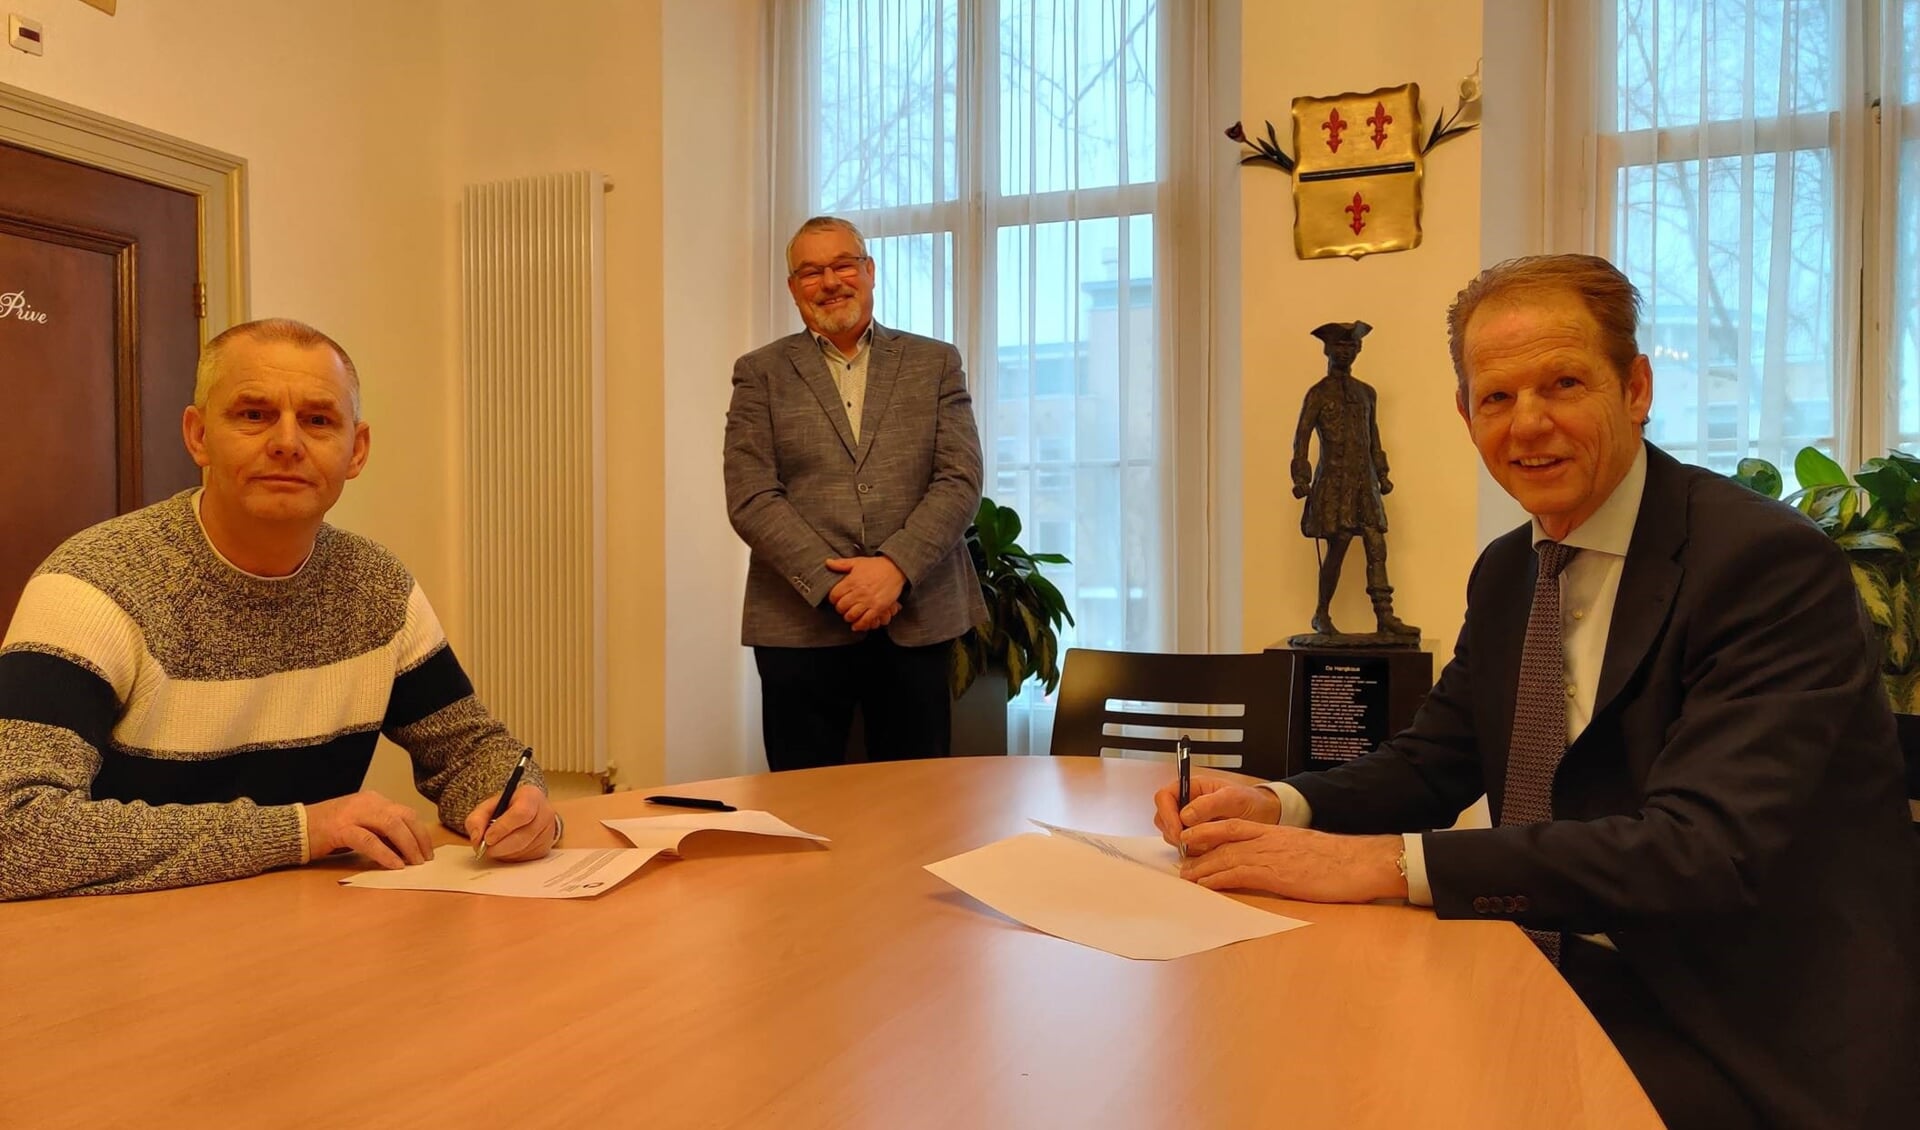 Ad van den Heuvel, Arie Harrewijn en rechts burgemeester Arie van Erk. | Foto: pr